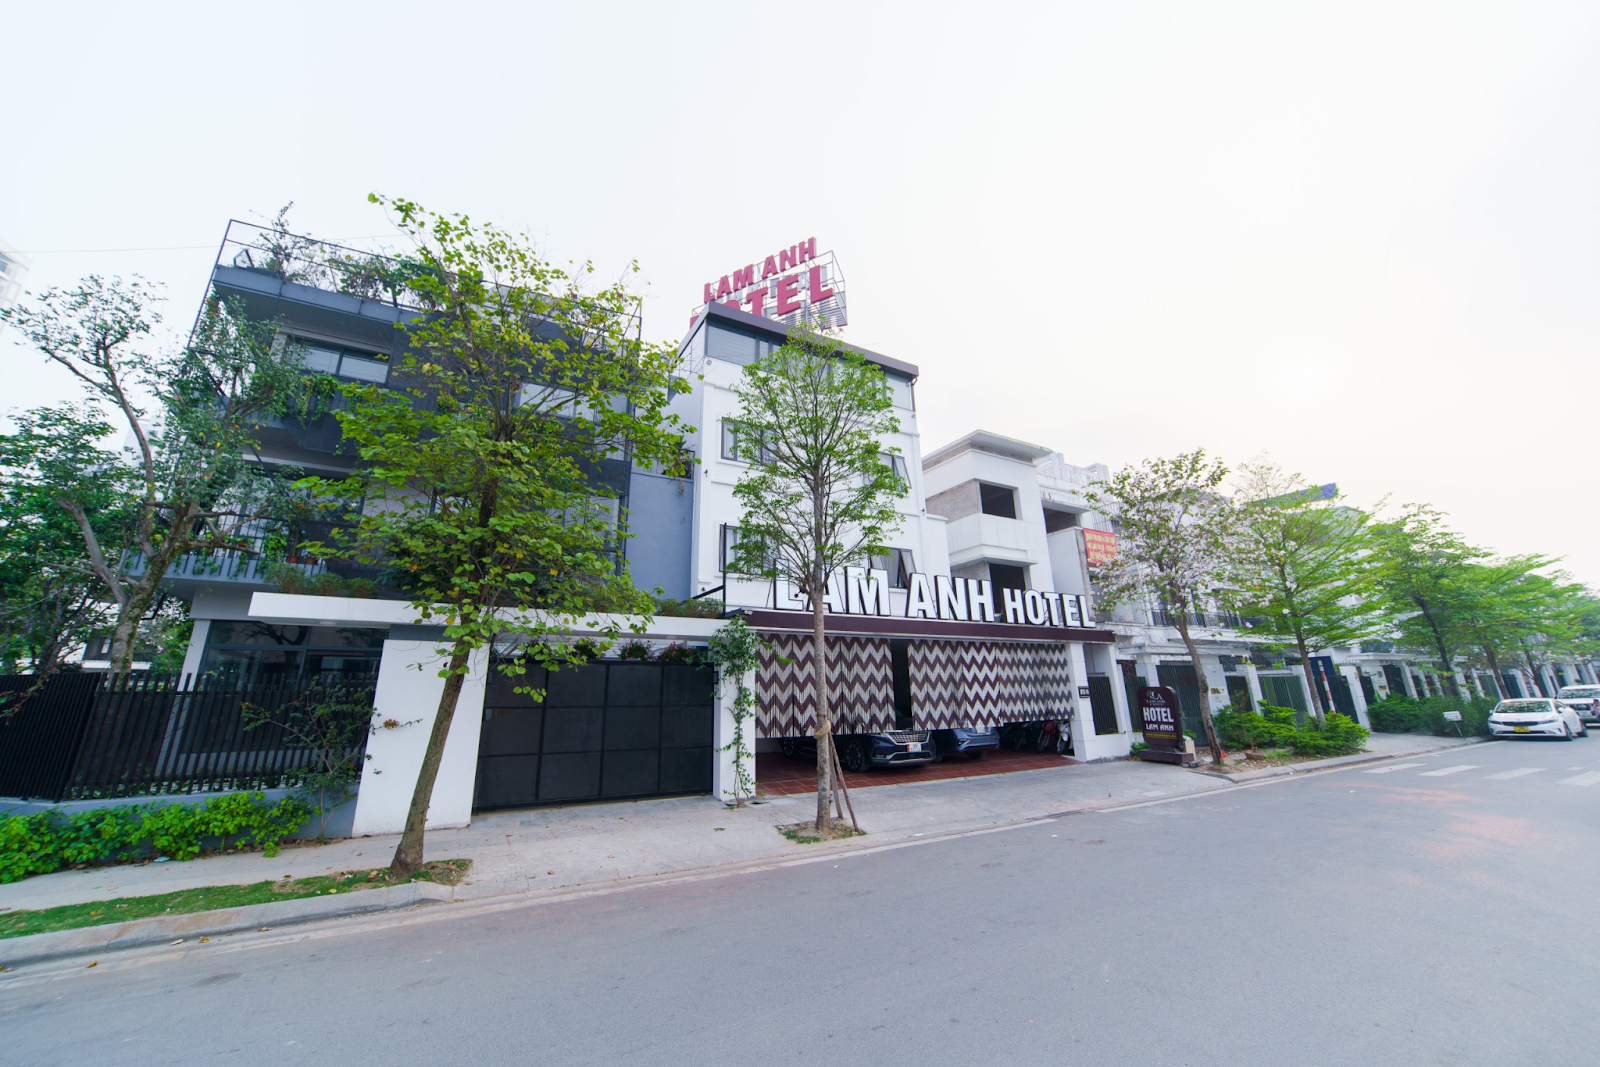 Lam Anh có hệ thống 6 cơ sở nhà nghỉ nằm ở các quận trung tâm Hà Nội